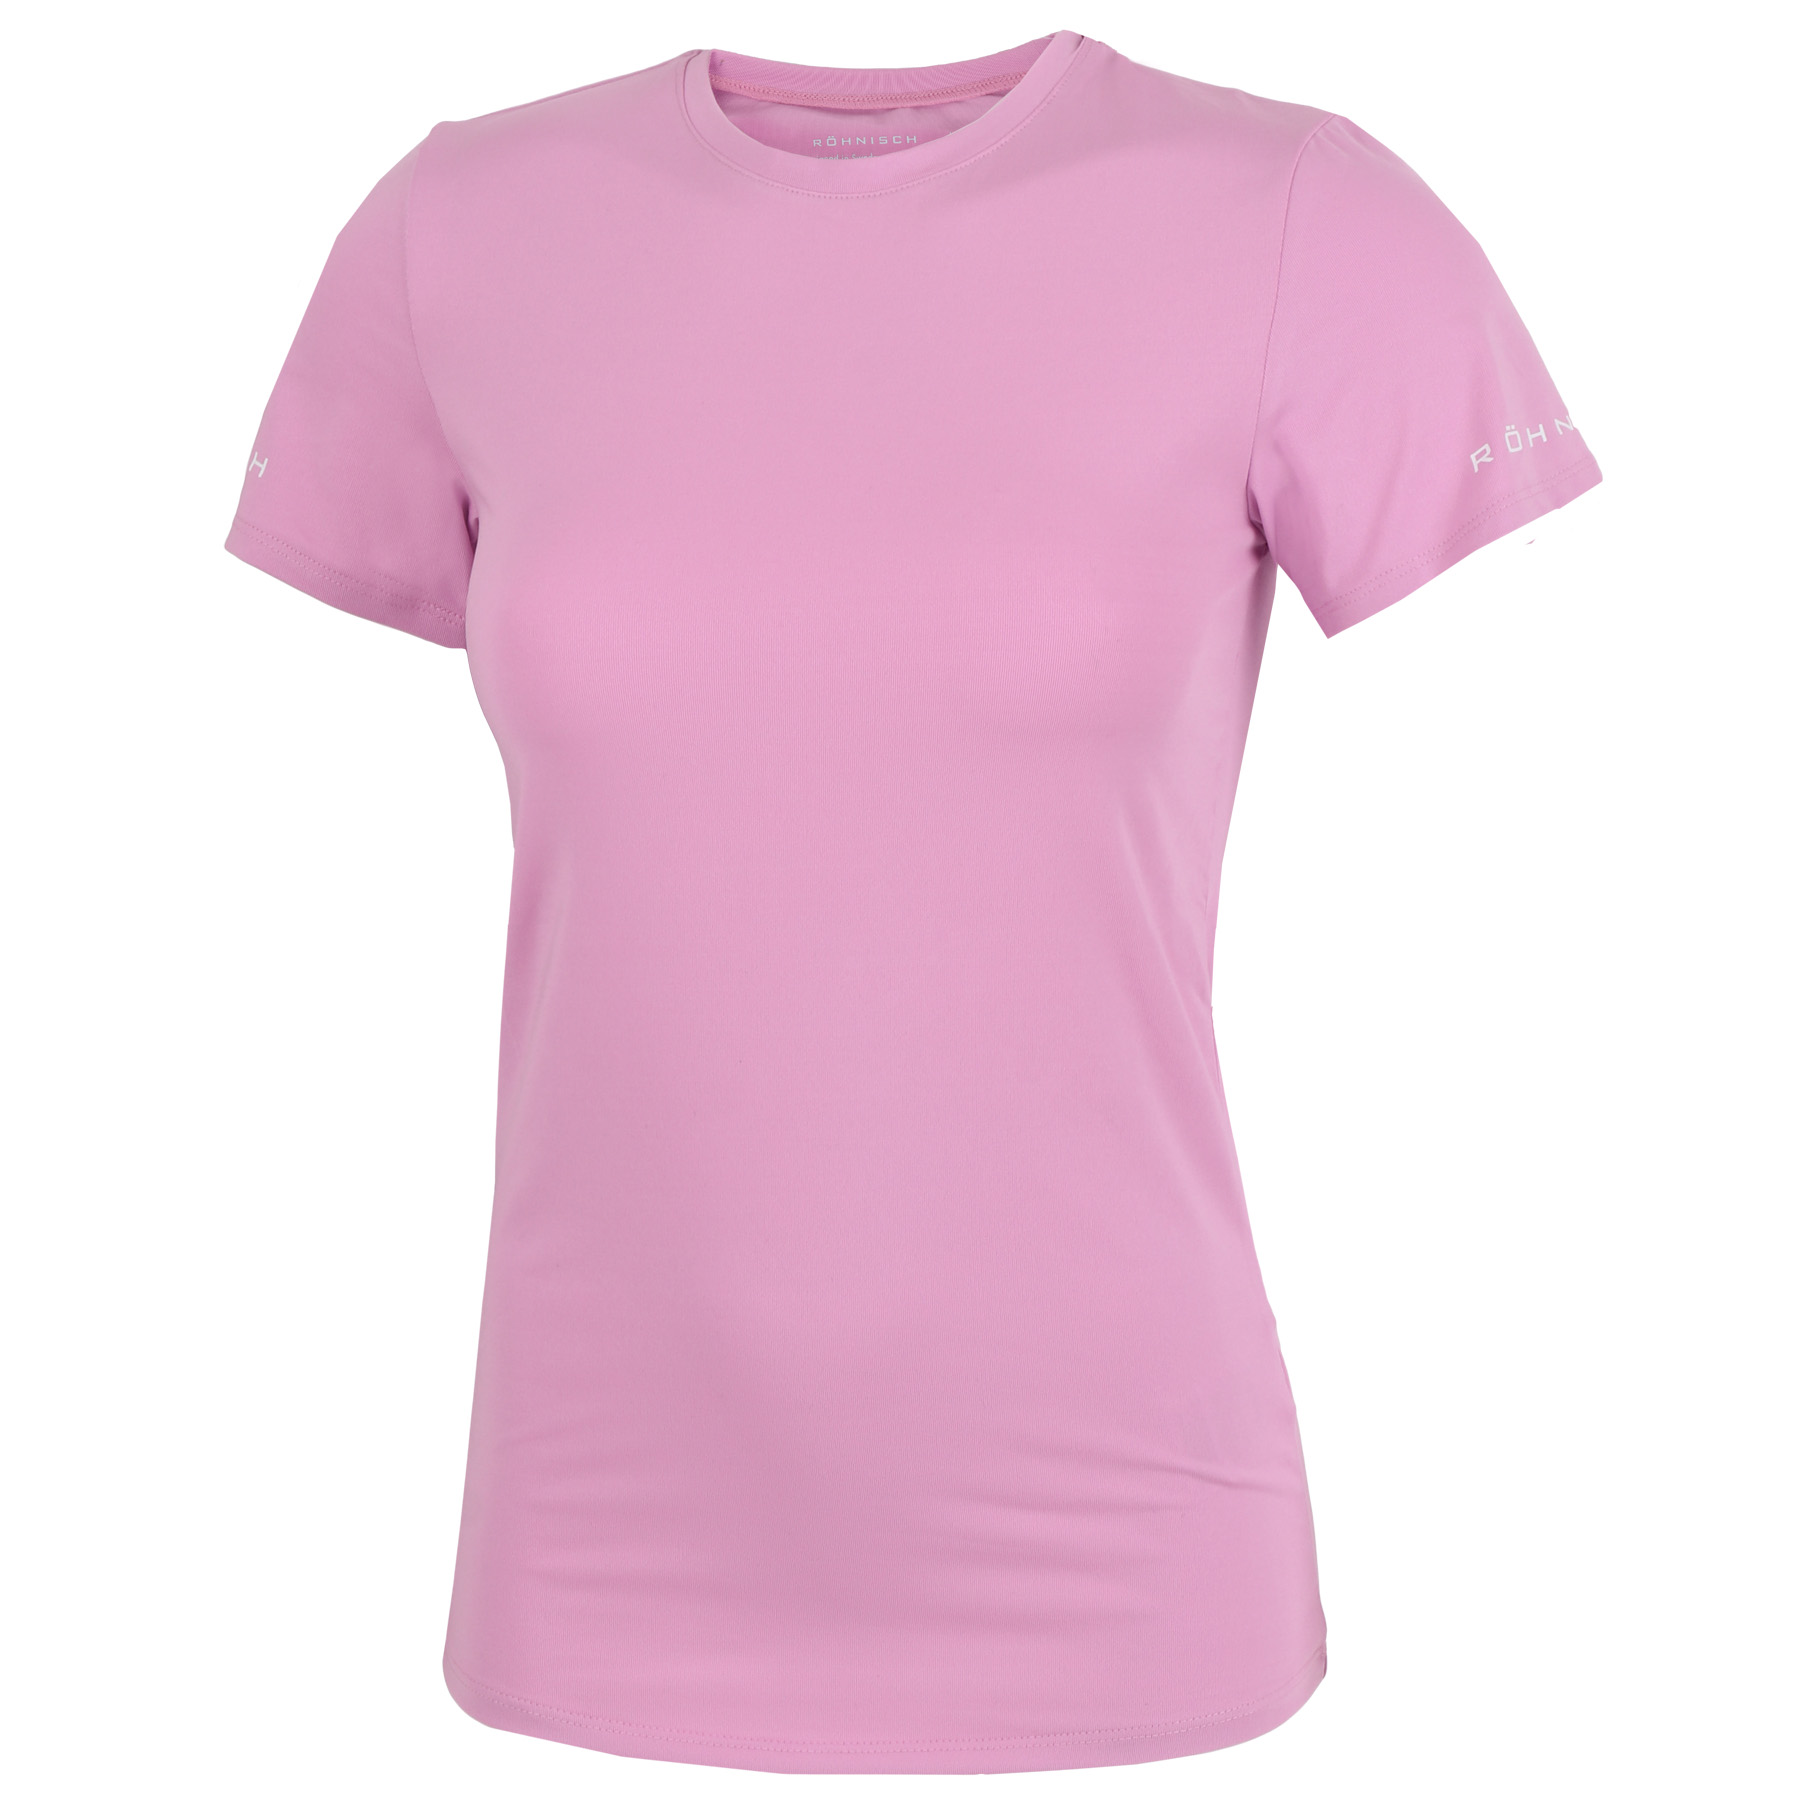 Produktbild von Röhnisch Arc Damen T-Shirt - Pastel Lavender